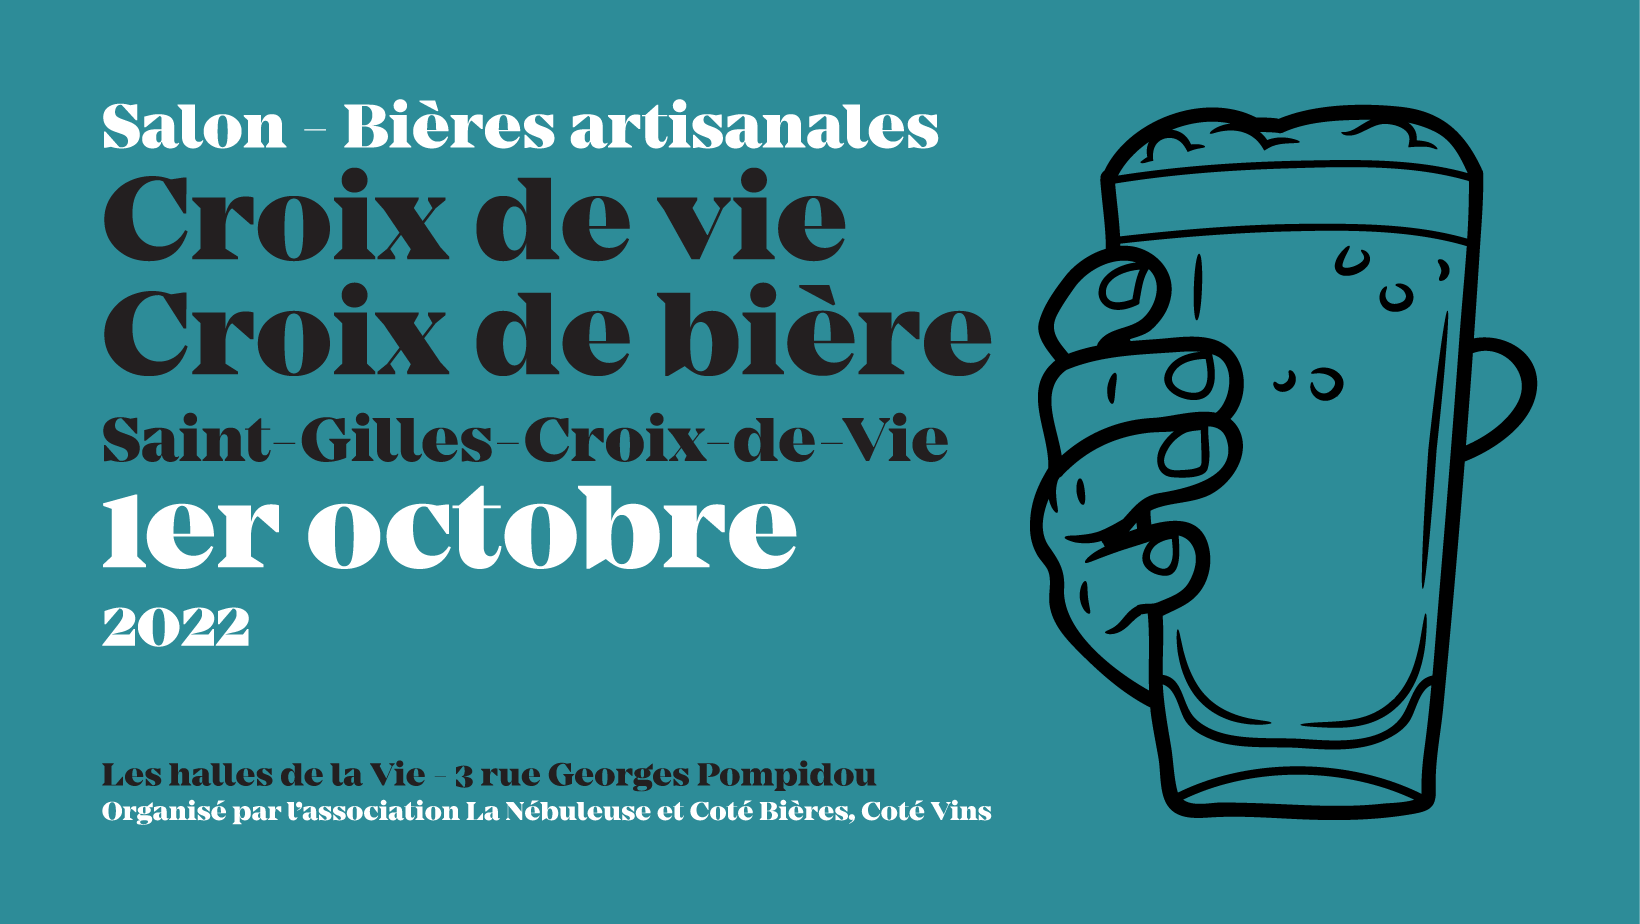 Salon de la bière artisanale Saint-Gilles-Croix-de-Vie croix de vie croix de bière samedi 1er octobre 2022